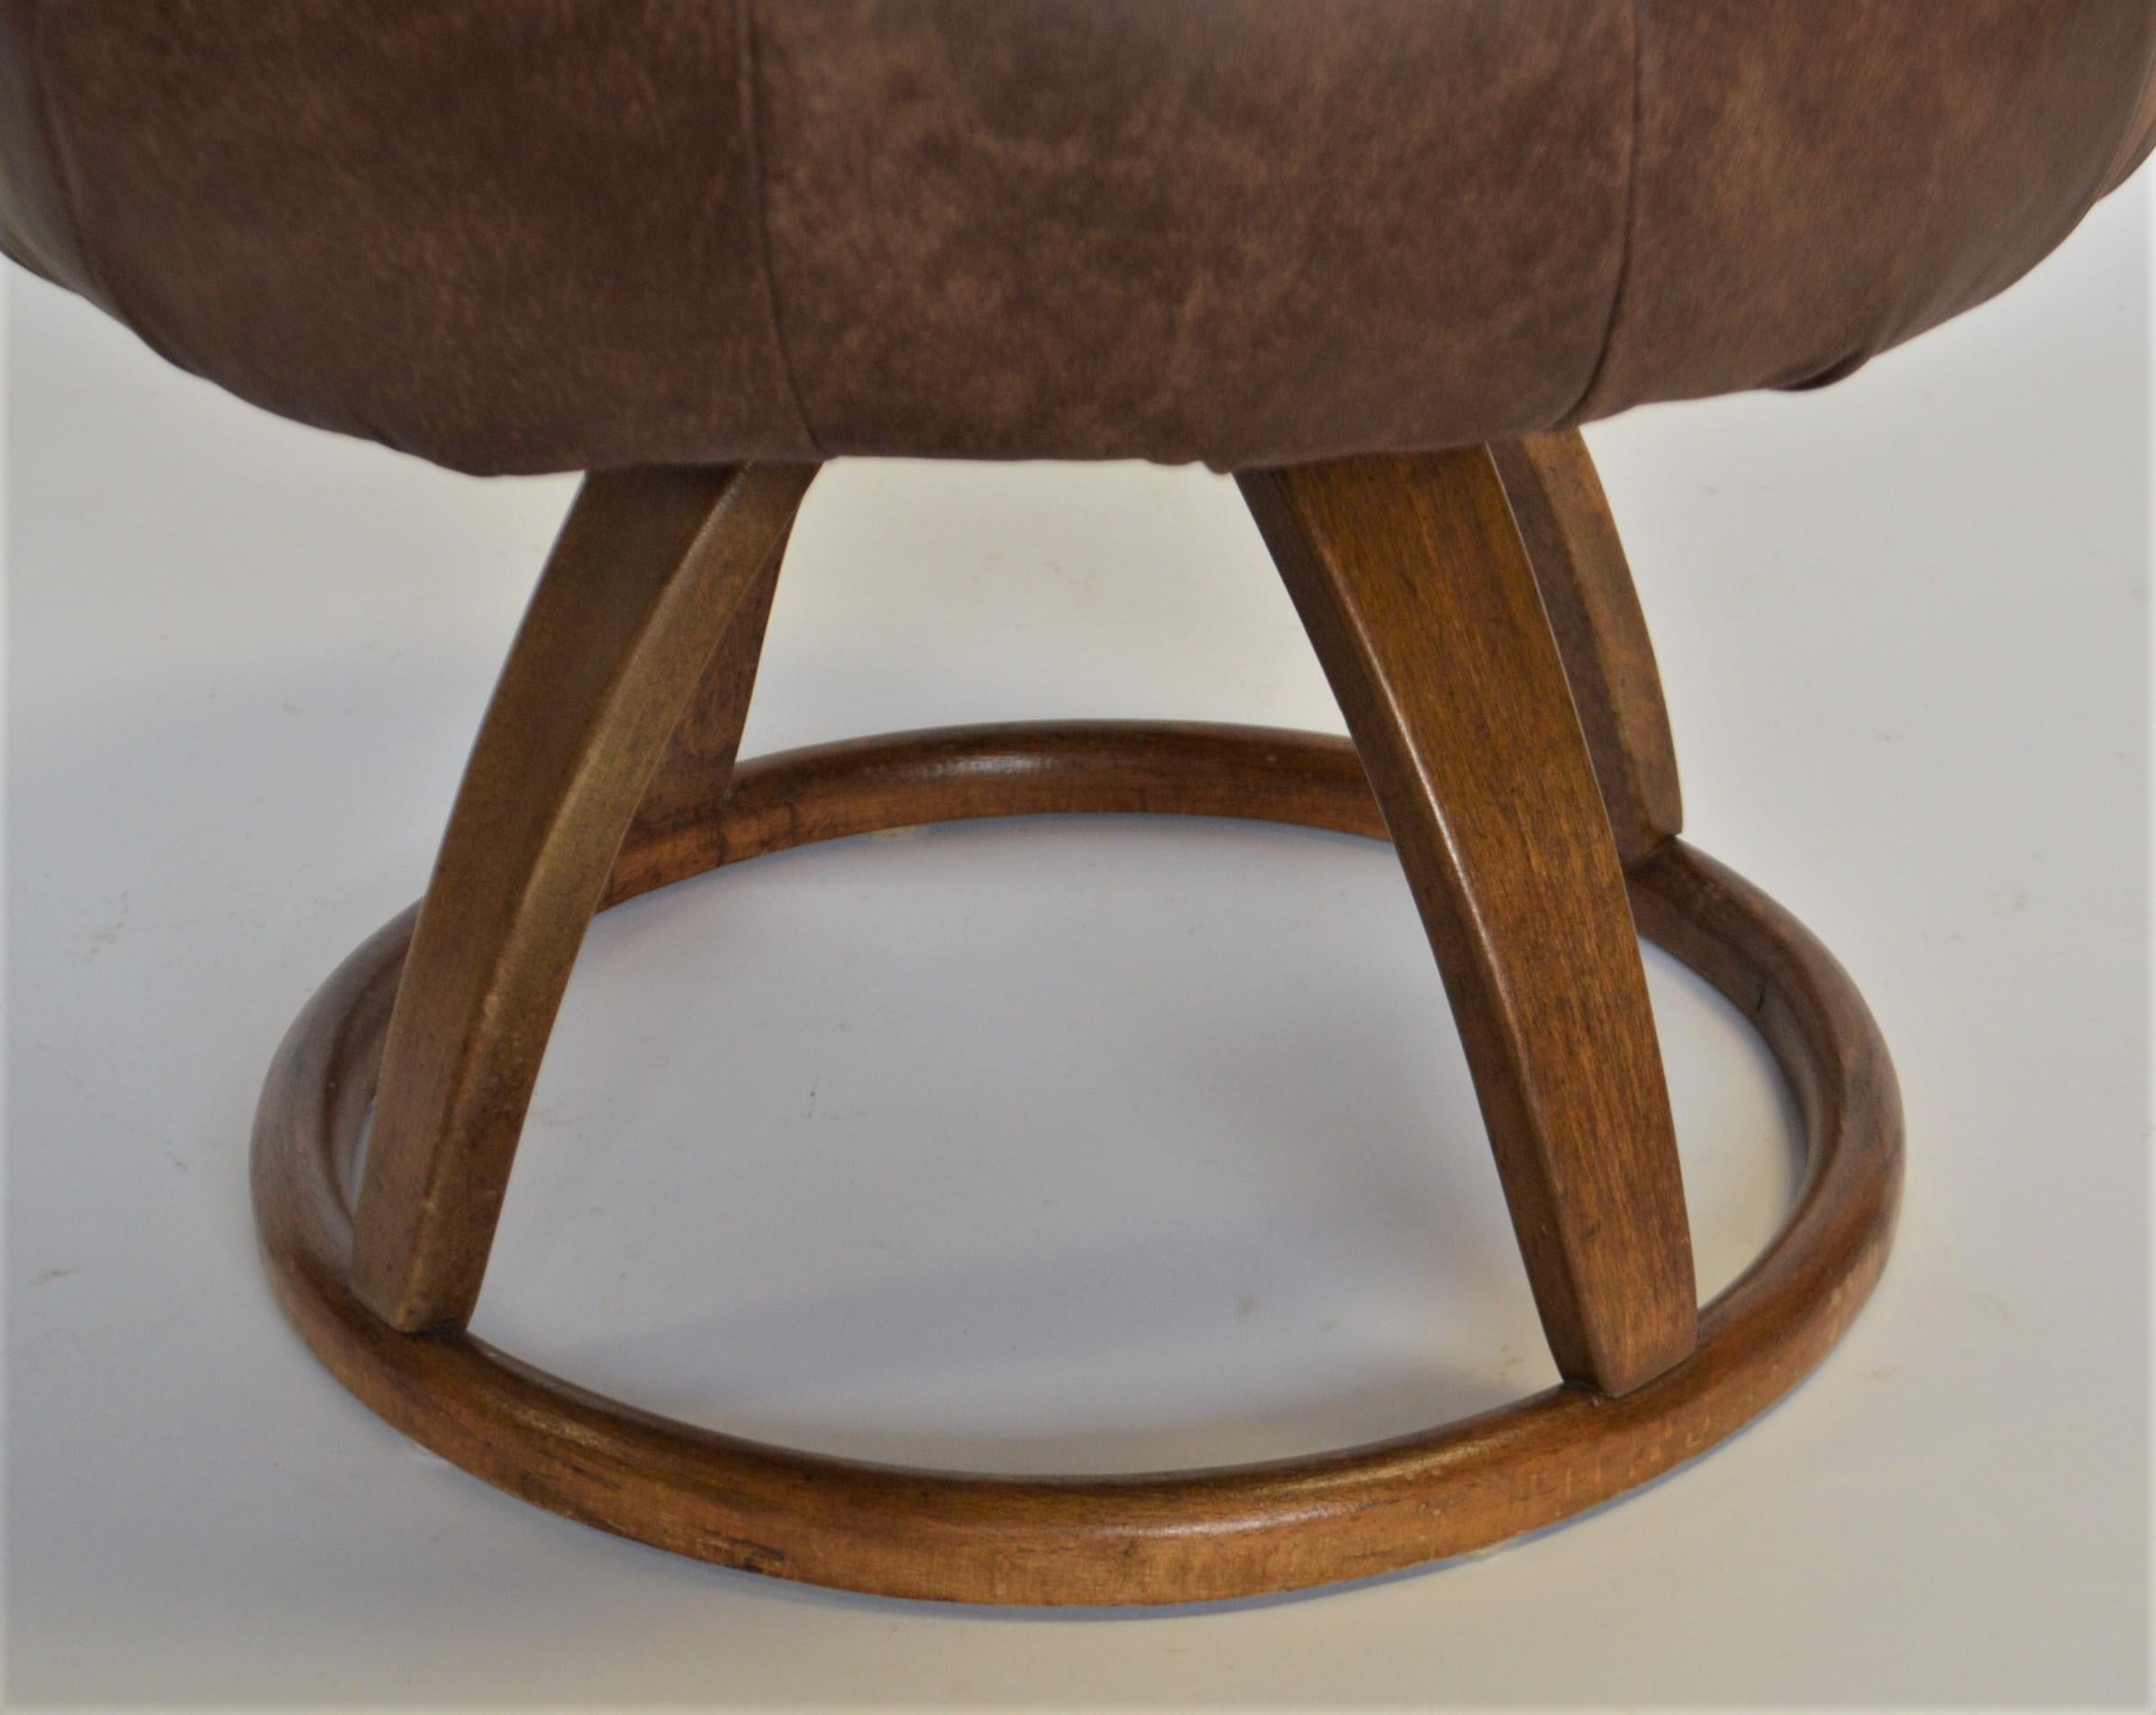 La base de ce tabouret/banc est une production en bois courbé fabriquée entre 1929 et 1930.
La base est dotée d'un mécanisme de pivotement. La sellerie a été refaite en utilisant un cuir neuf de style vieilli.